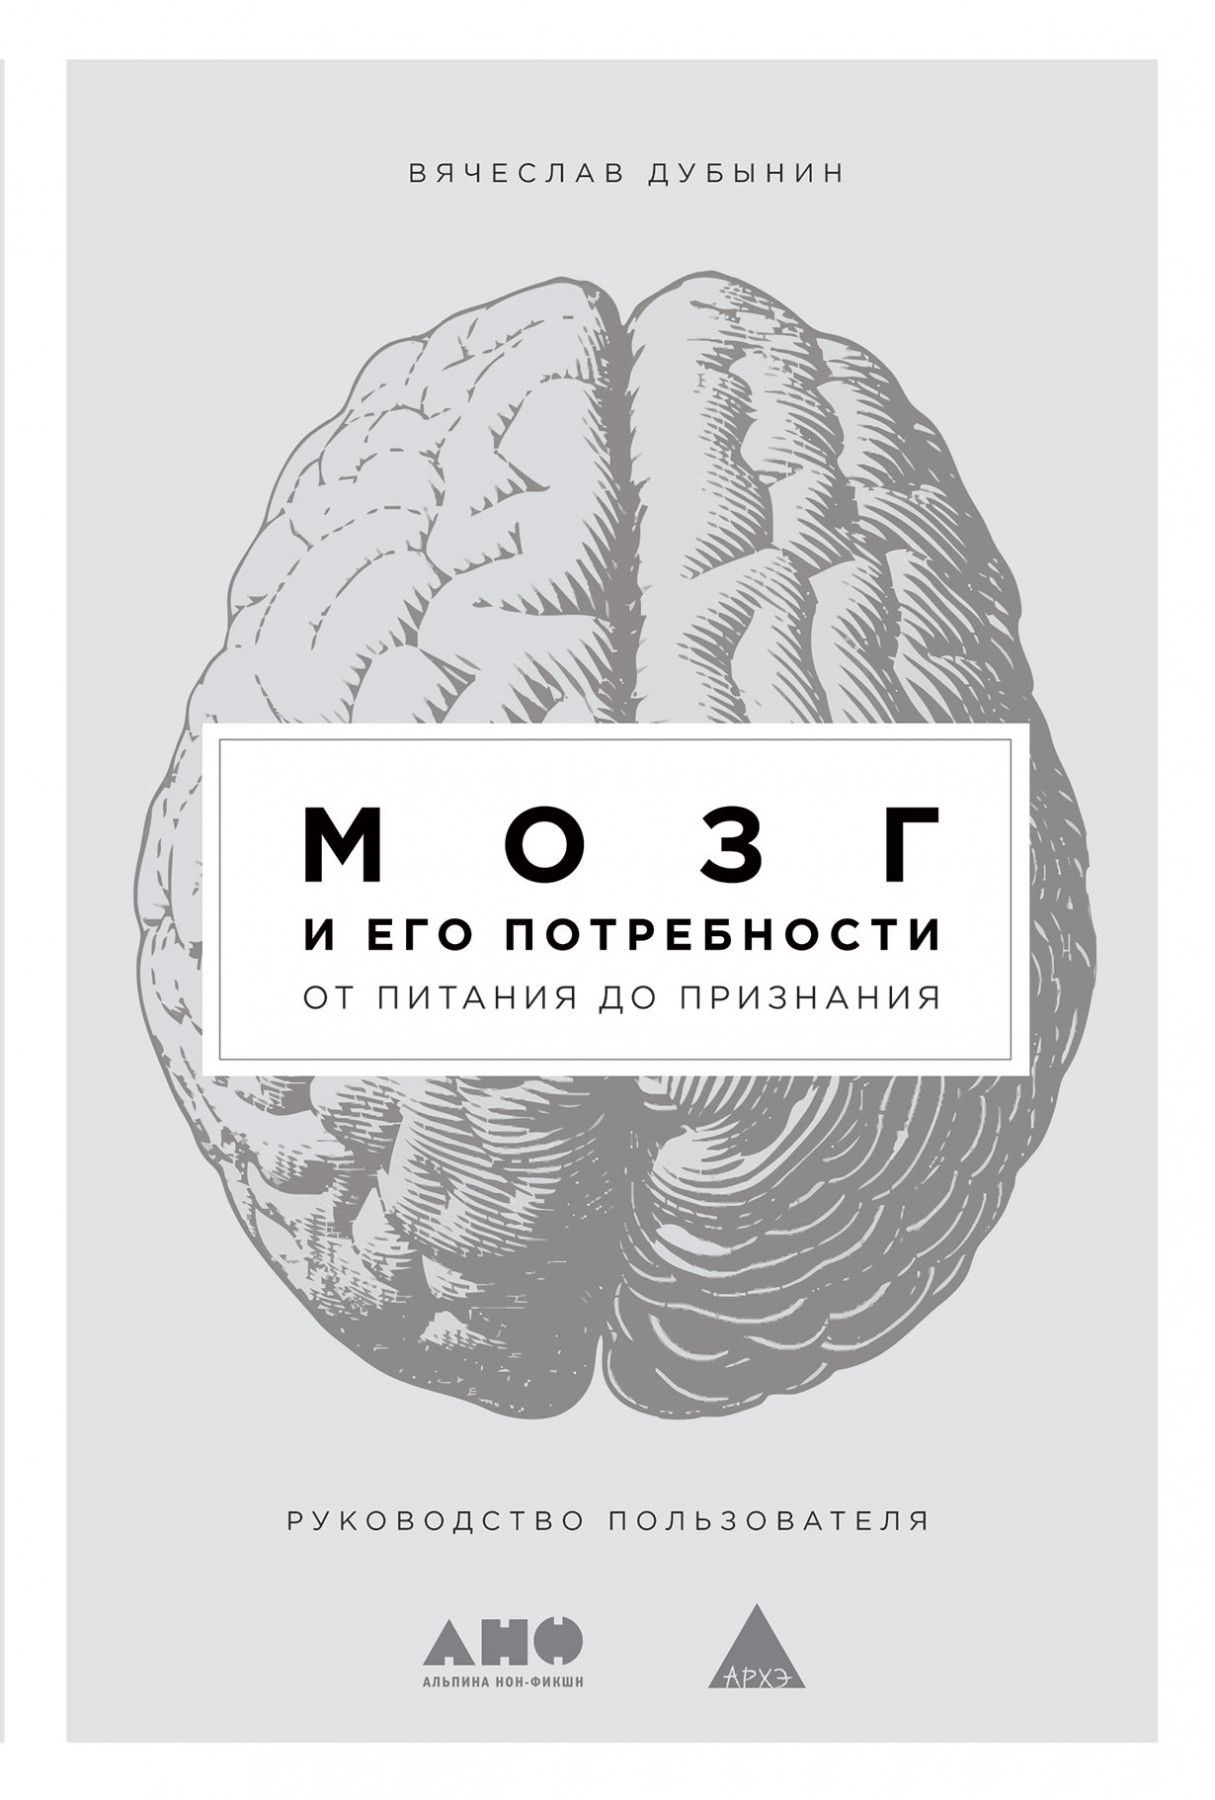 Book brain. Мозг и его потребности Дубынин книга. Мозг и его потребности от питания до признания.